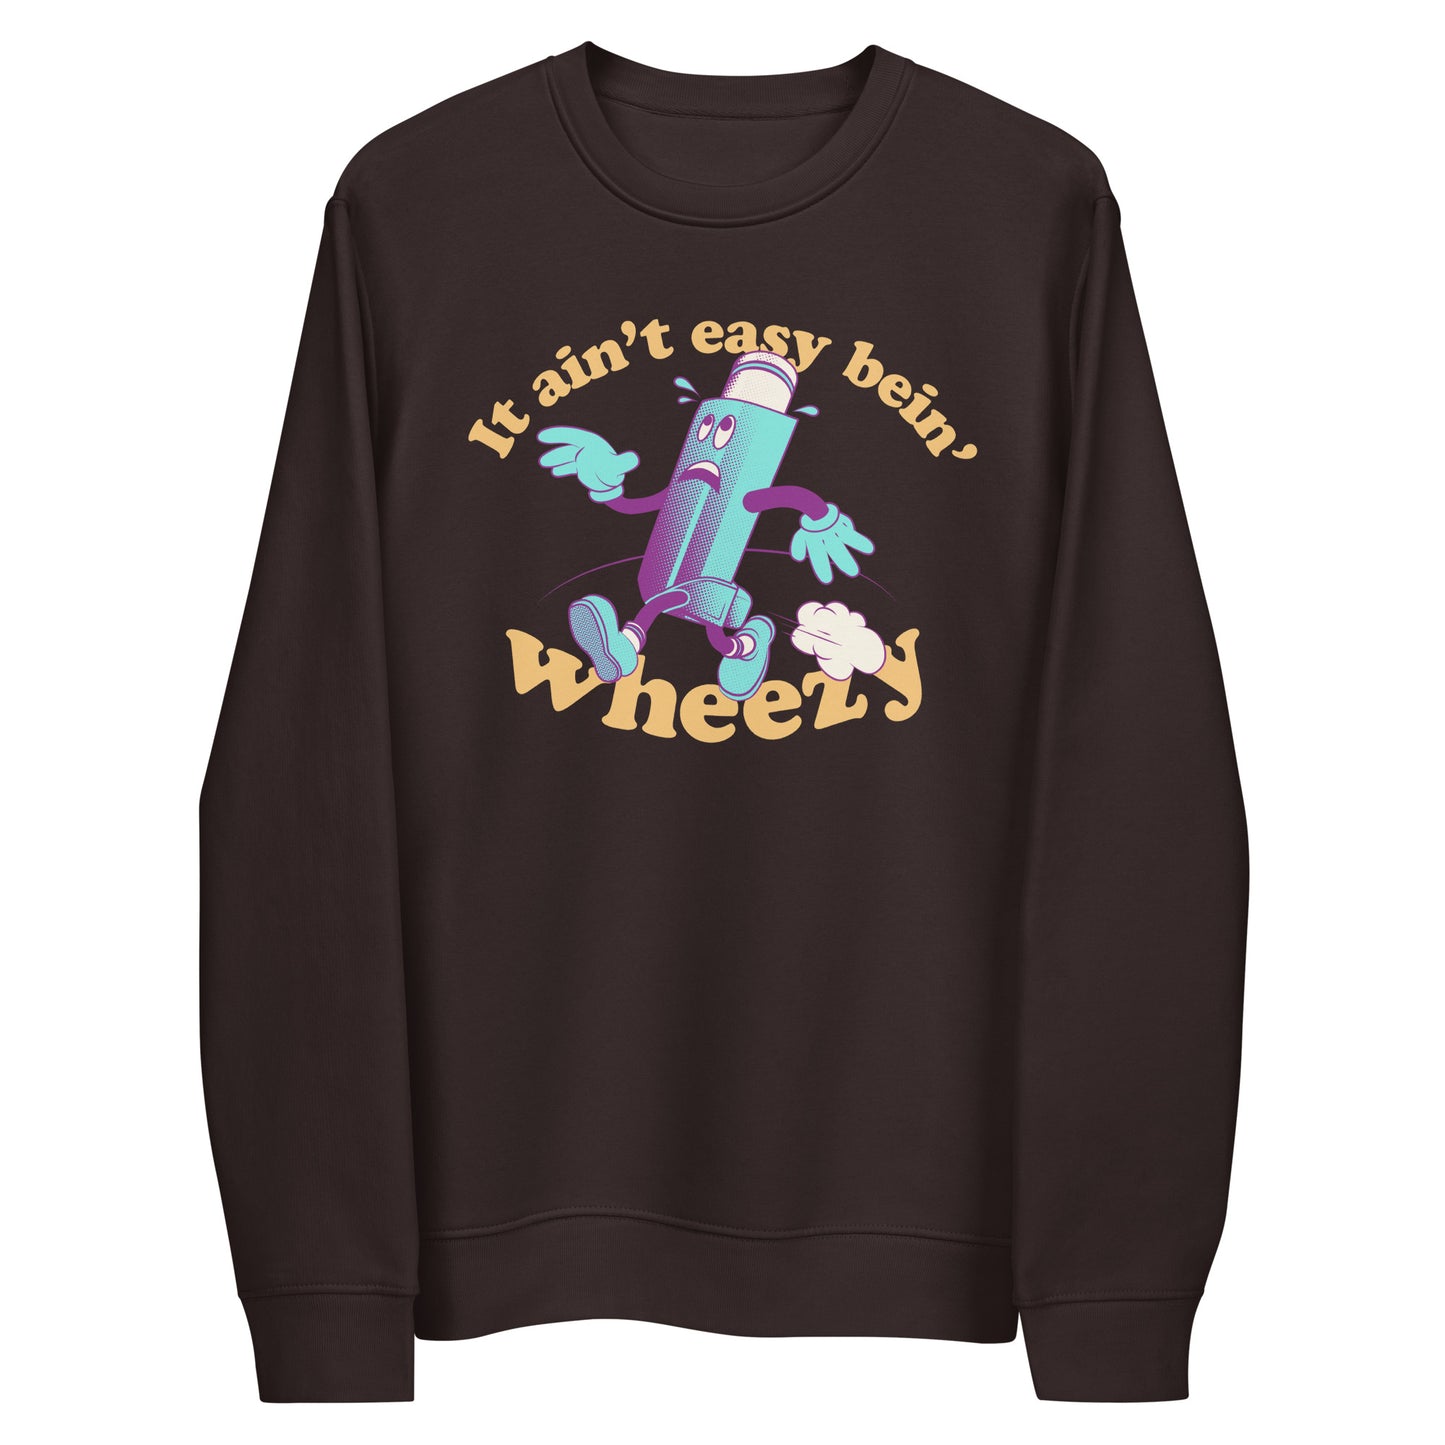 It ain't easy bein' wheezy - Sweatshirt